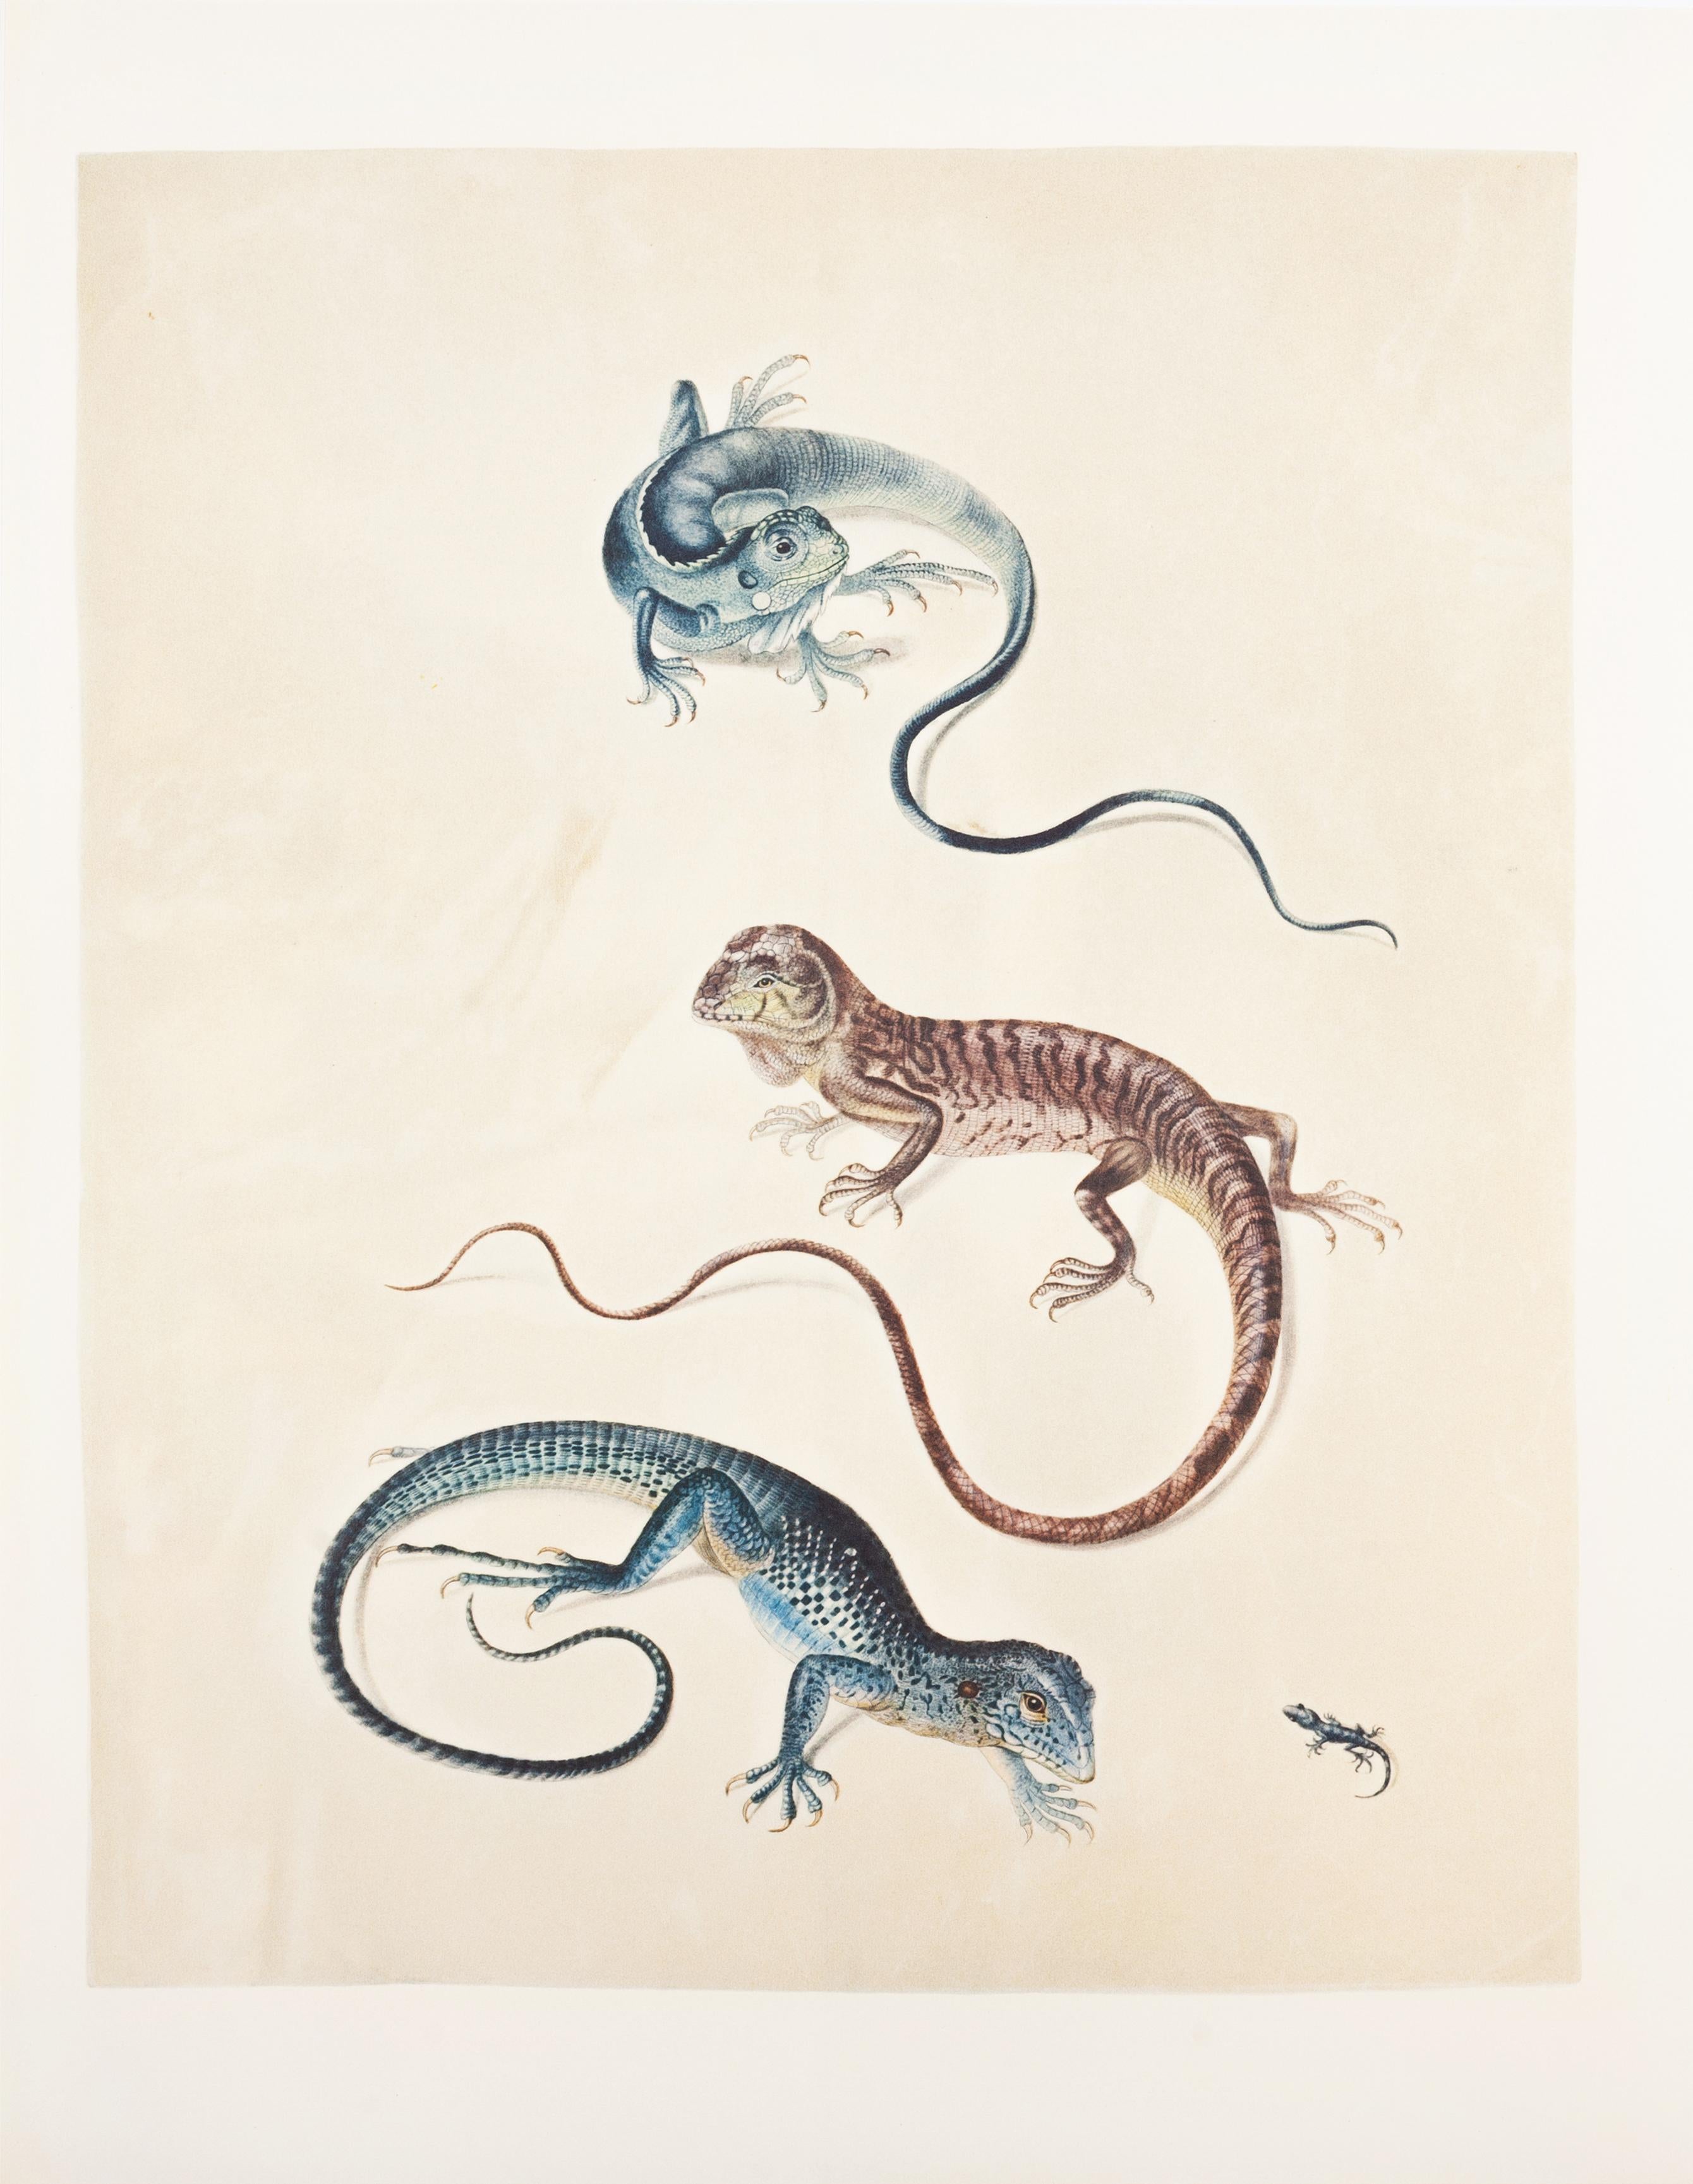 31. Iguana mit Keelschwanzschwanz, Holbrookia spec., Surinam ameiva, Gecko – Print von Maria Sybilla Merian